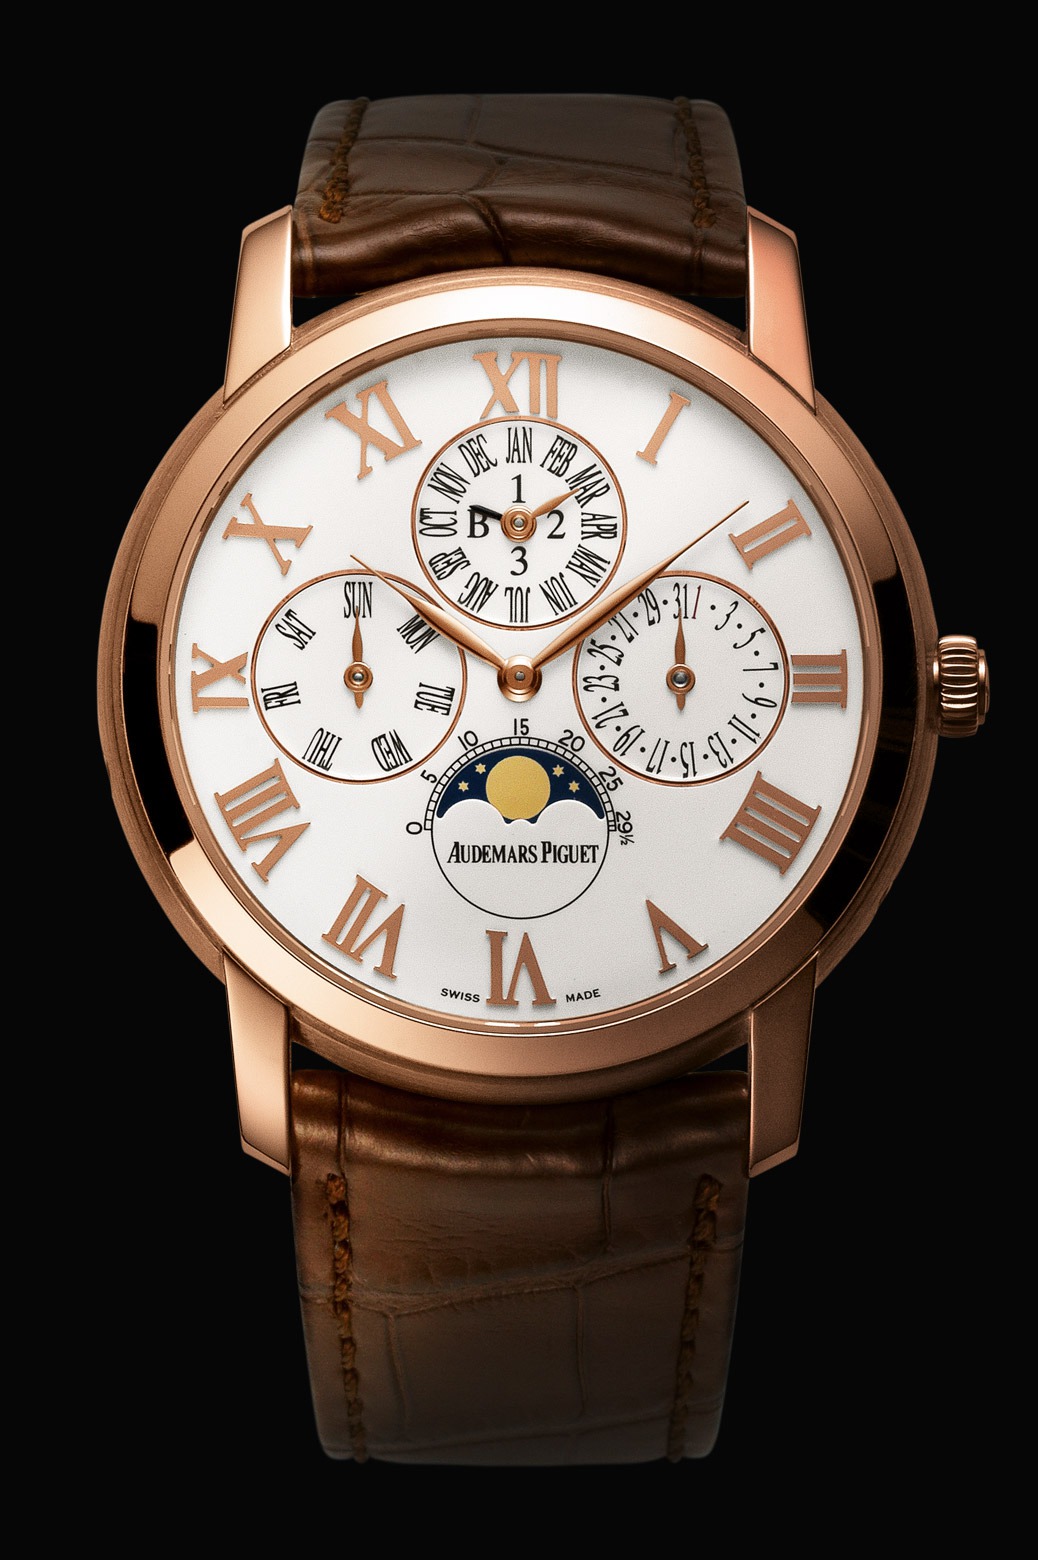 Audemars Piguet Jules Audemars Perpetual Calendar Pink Gold watch REF: 26391OR.00.D088CR.01